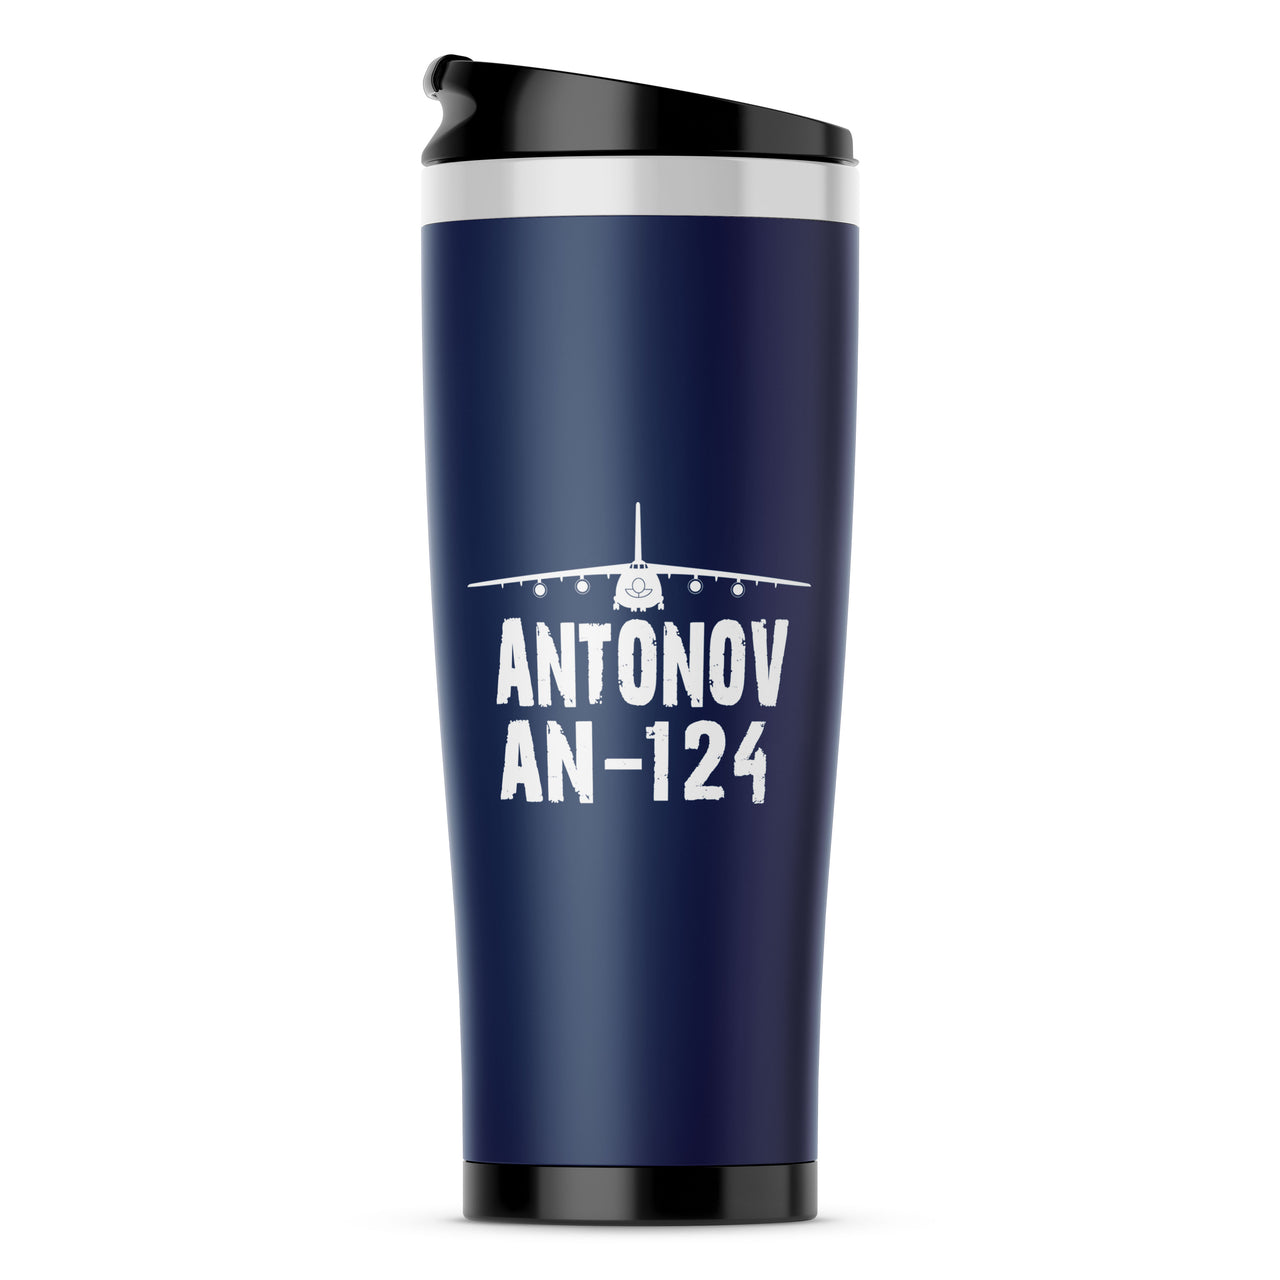 Antonov AN-124 & Plane Designed Travel Mugs